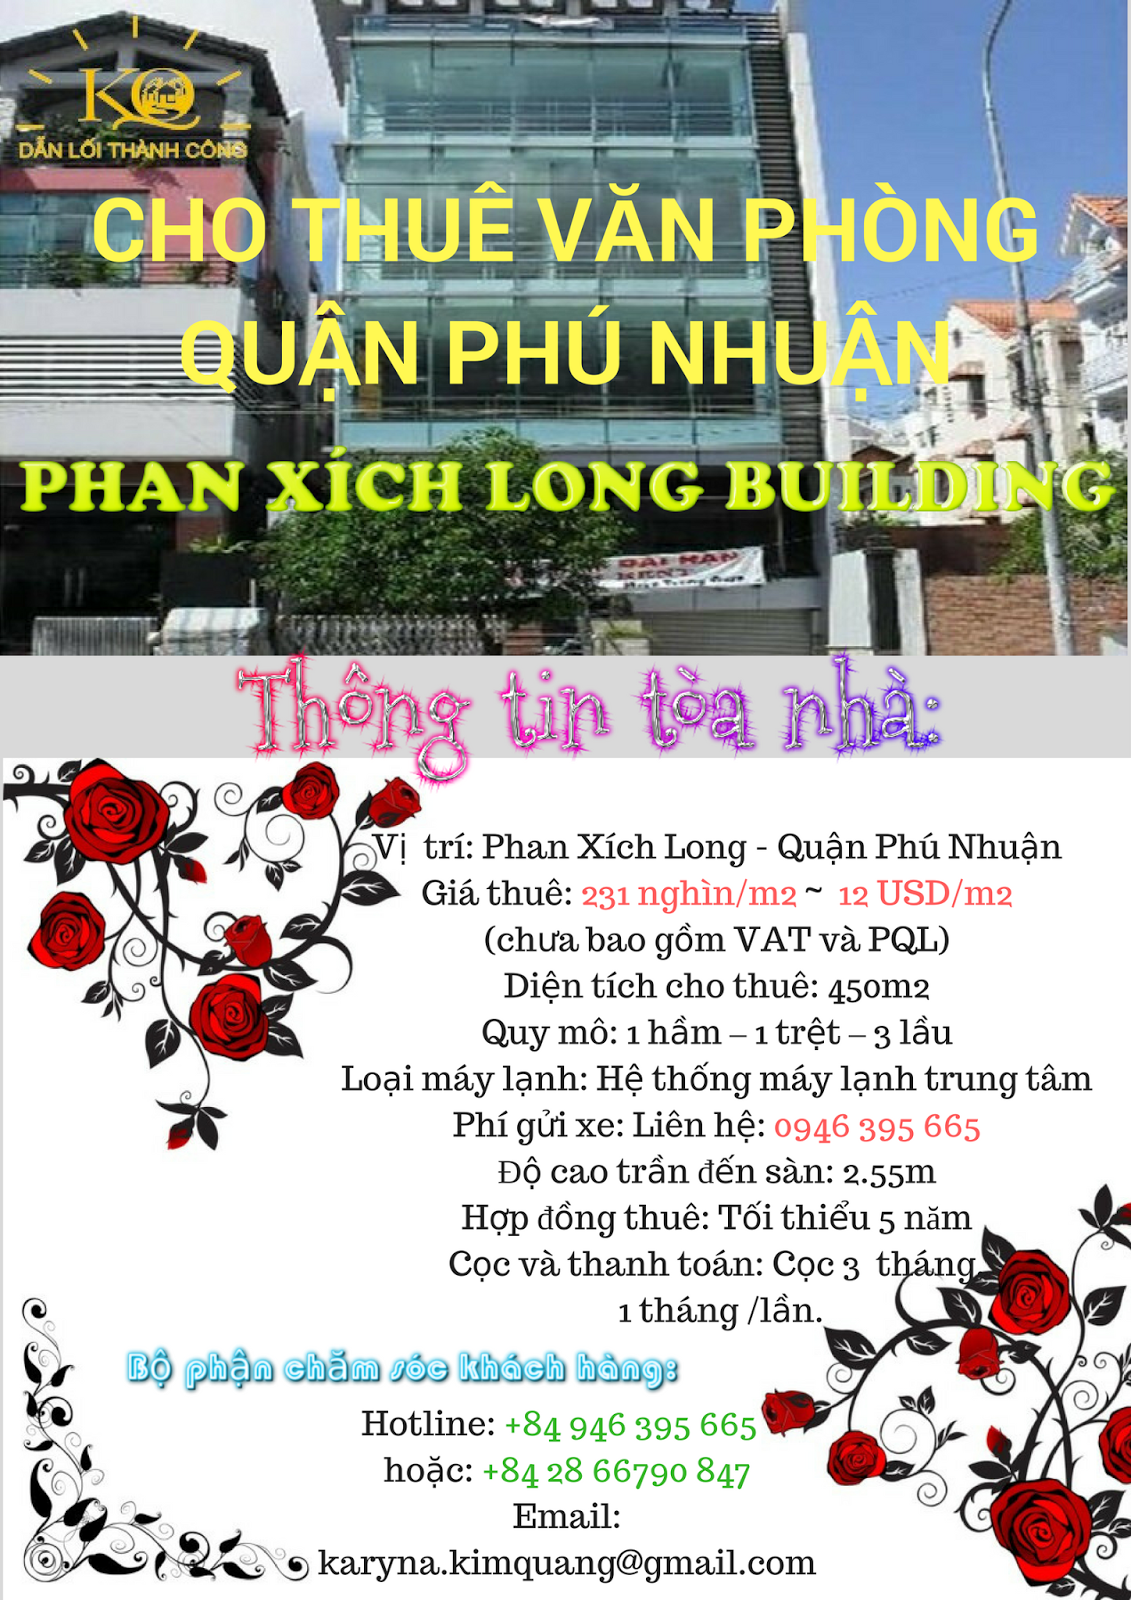 Cho thuê văn phòng quận Phú Nhuận Phan Xích Long building